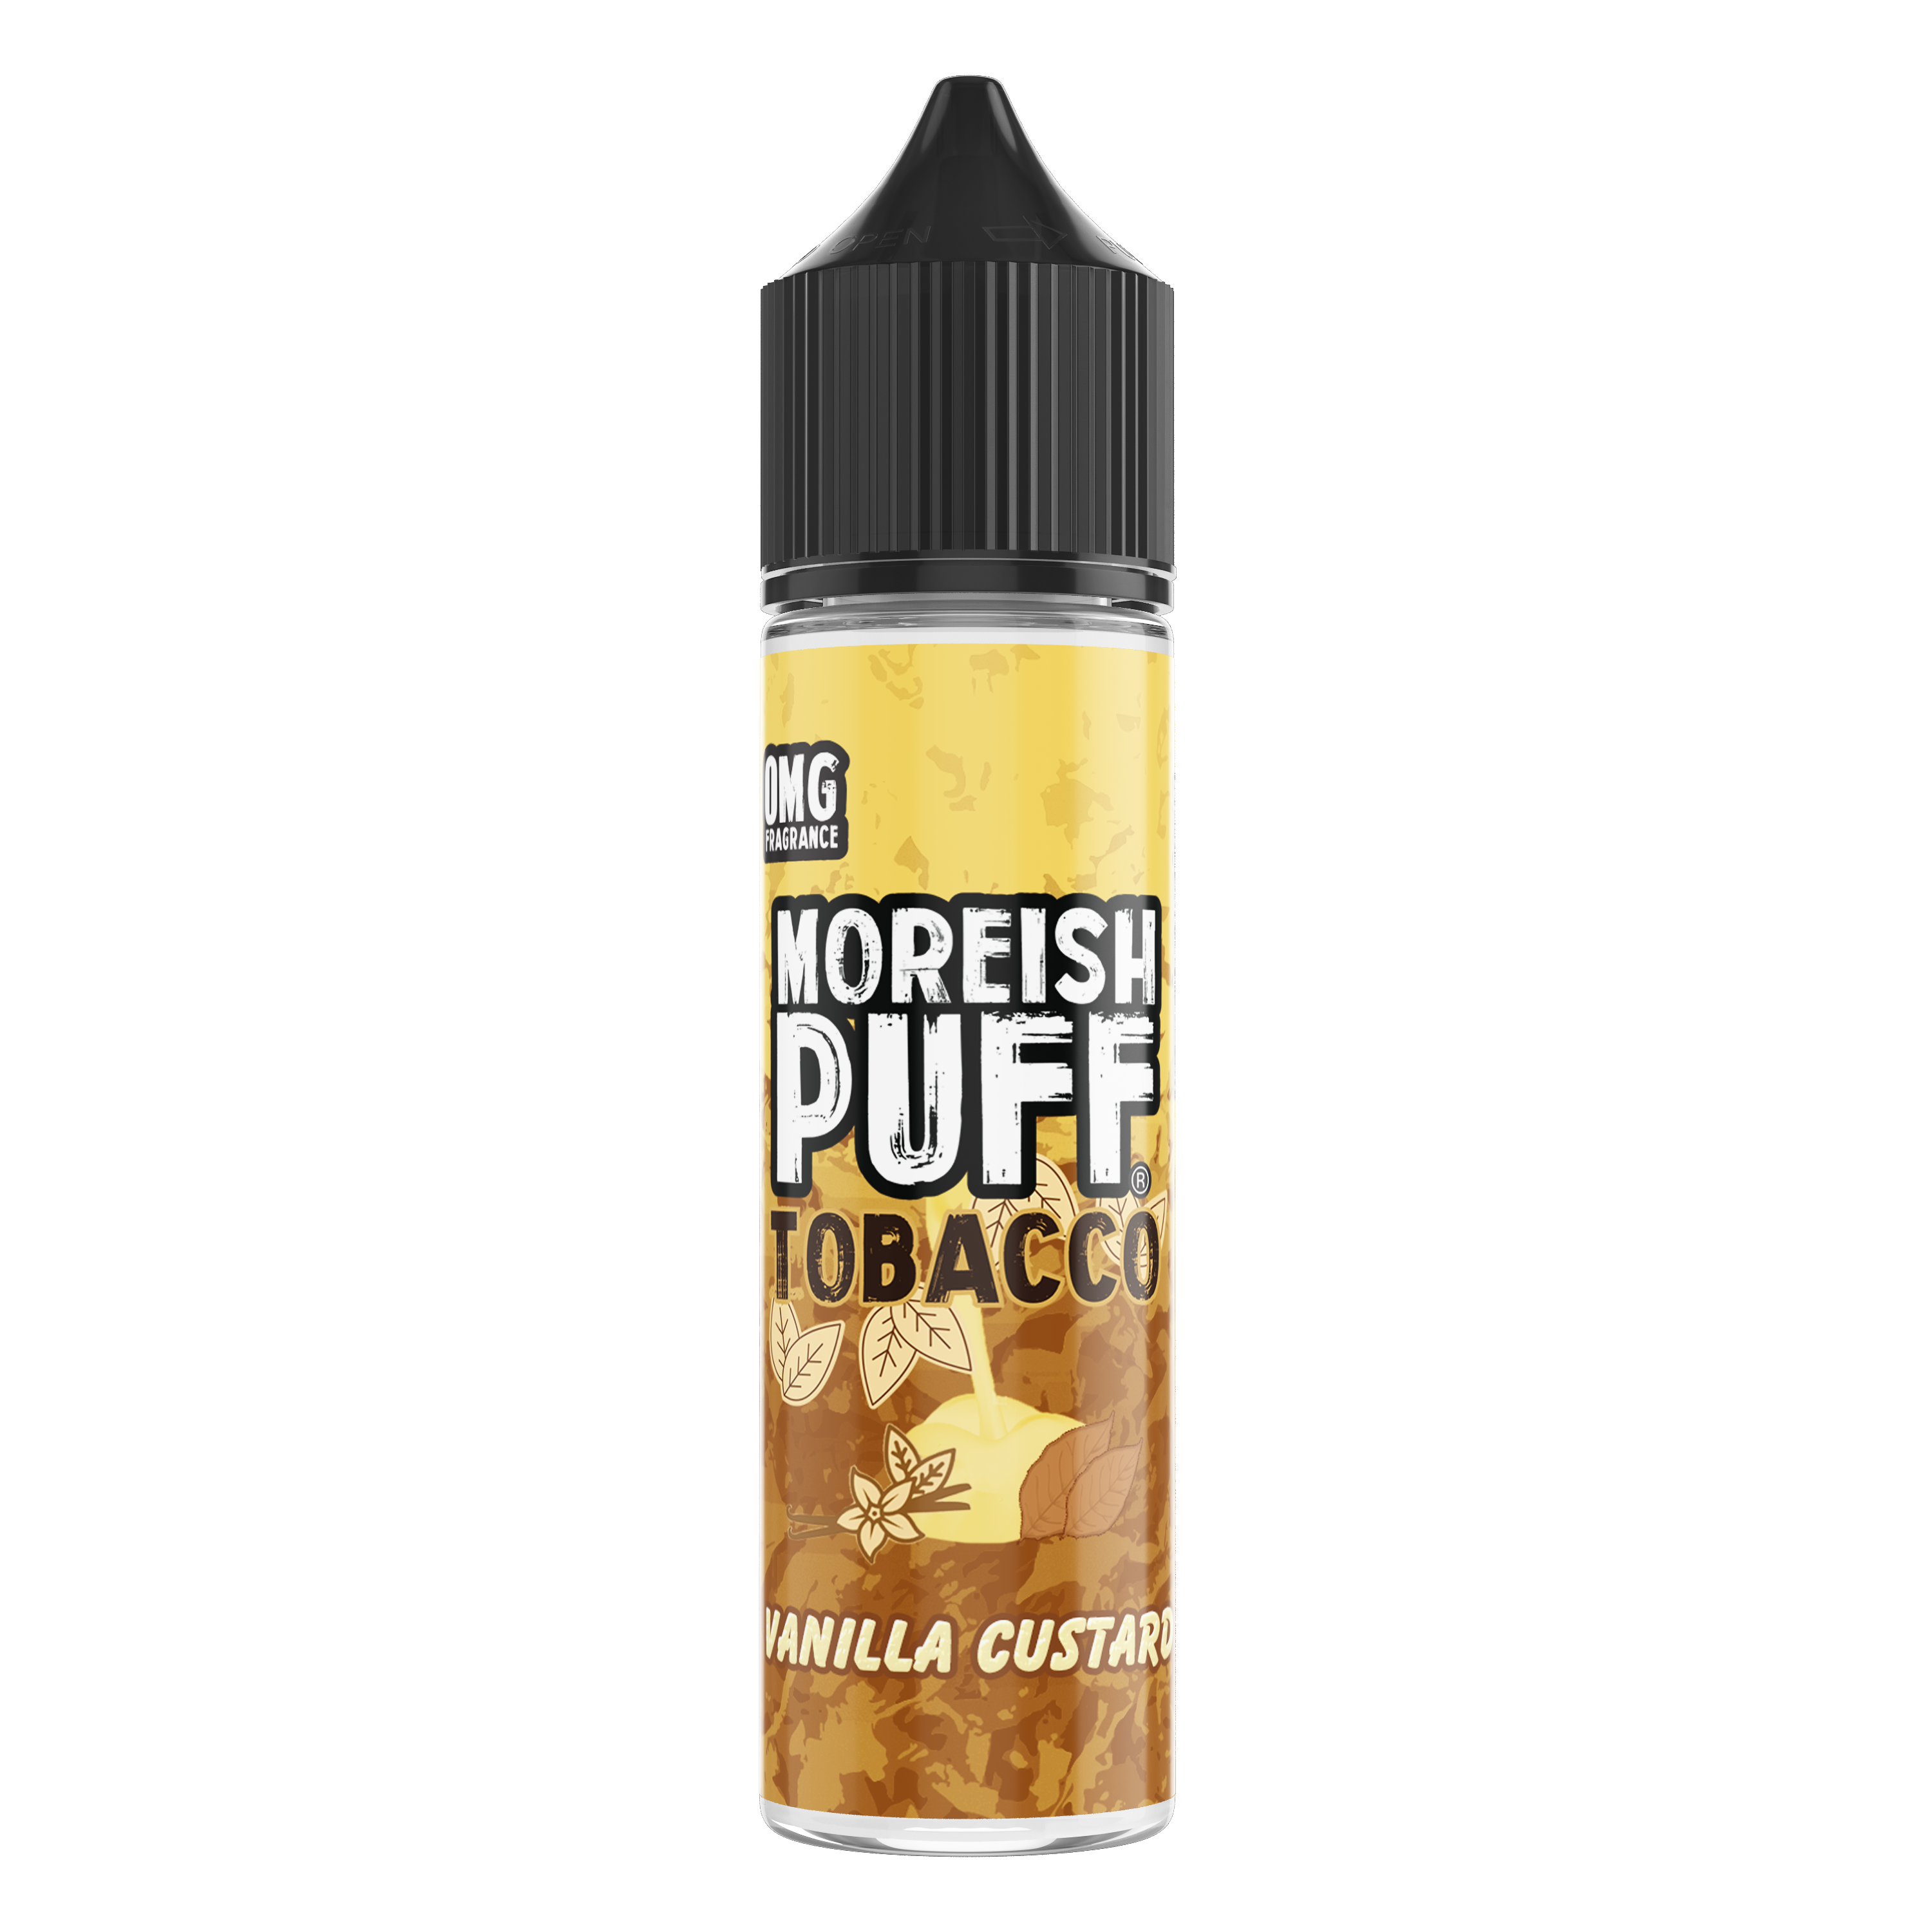 Moreish Puff Tobacco Vanilla Custard 0mg 50ml Shortfill E-Liquid